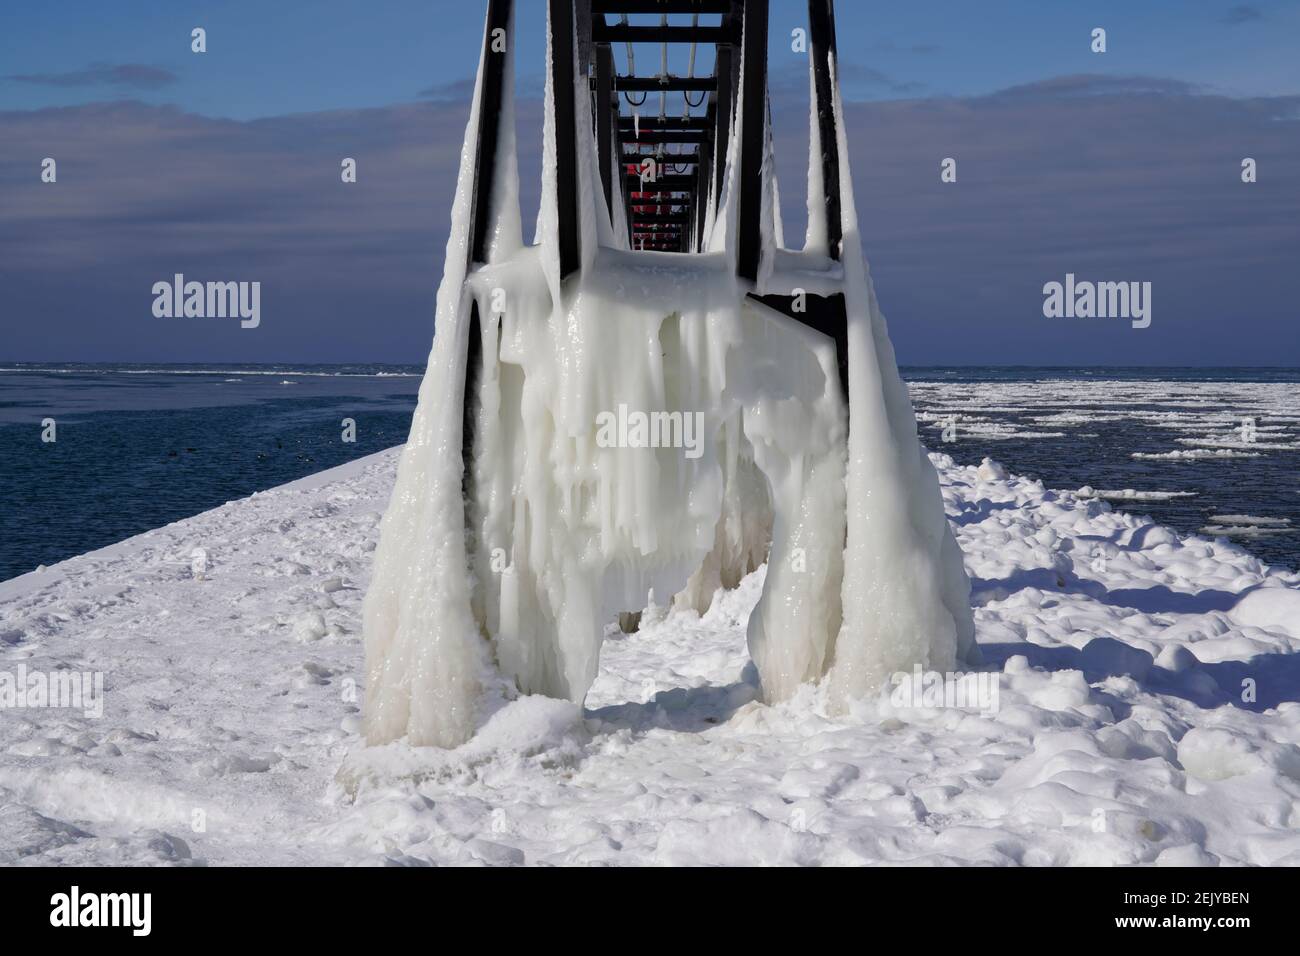 Formation de glace à Grand Haven, Michigan. Février 2021, la glace couvrait la lumière intérieure de Grand Haven, paysage Banque D'Images